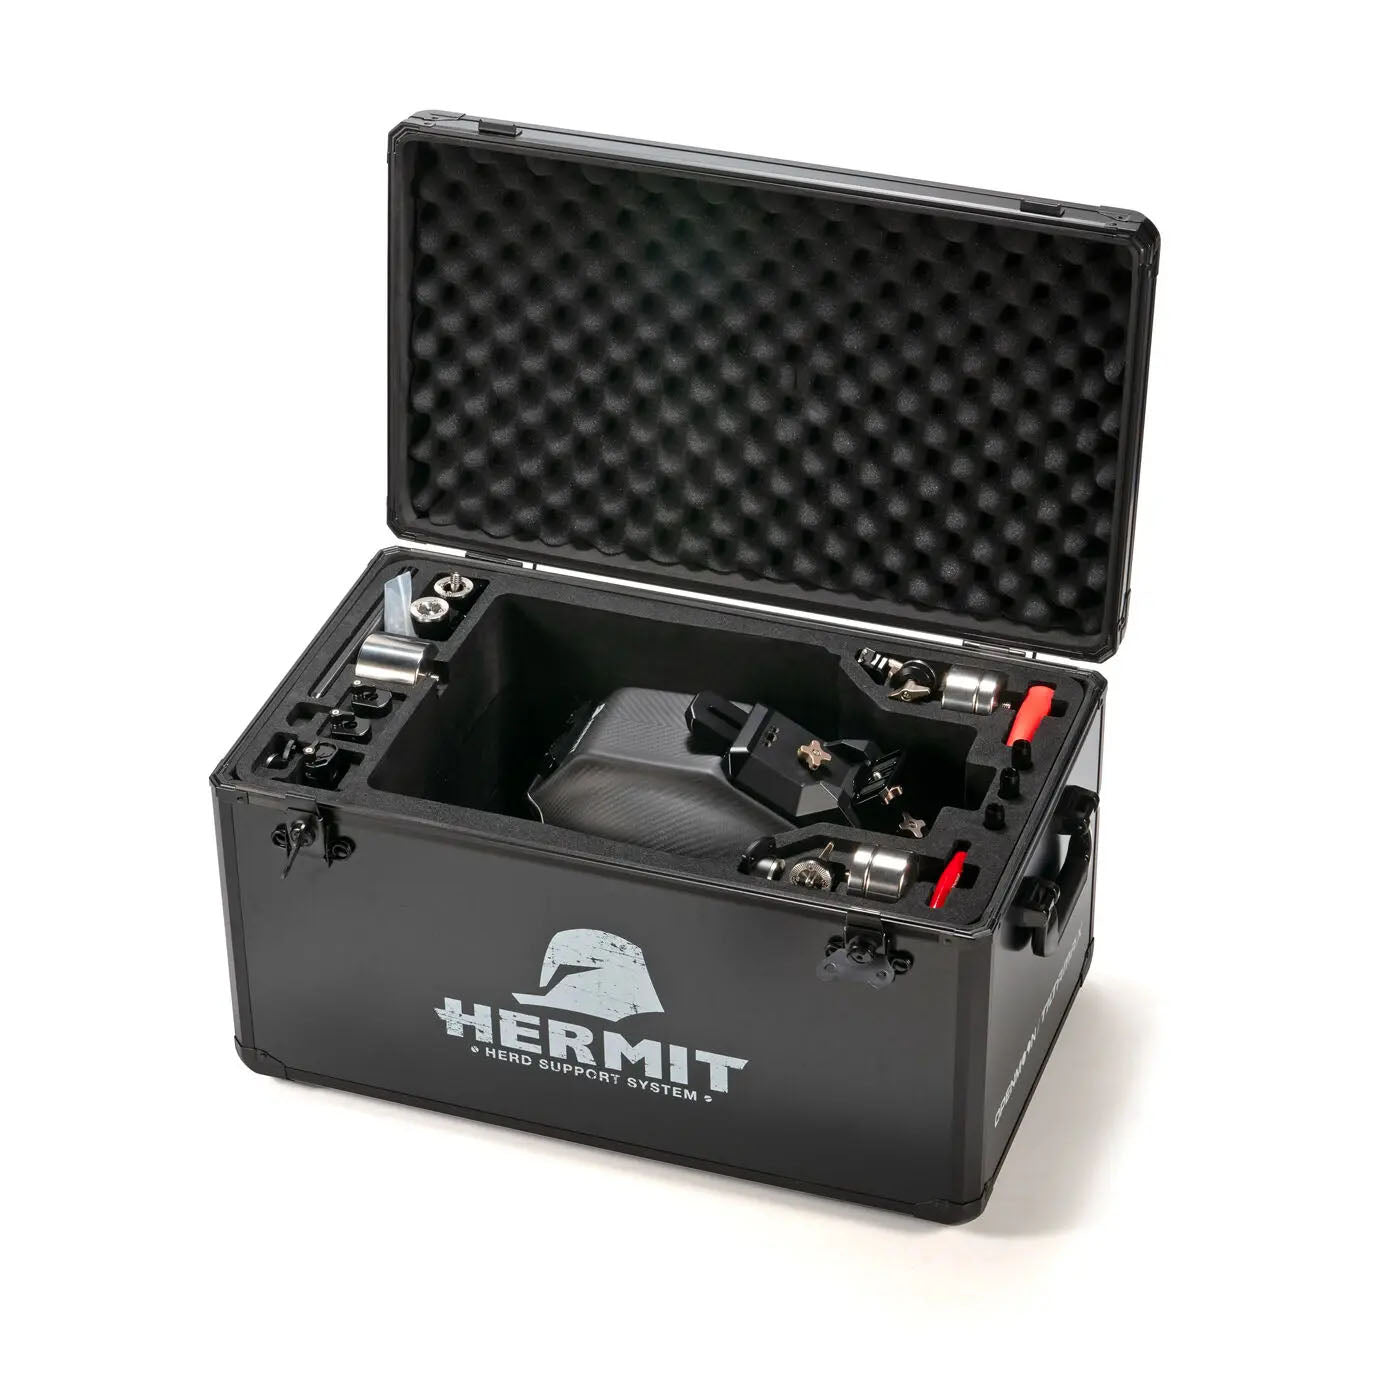 TILTA(ティルタ) Hermit POV Support System (ヘルメット) (XXL) - Gold Mount(アントンマウント) TA-HR-XXL-AB